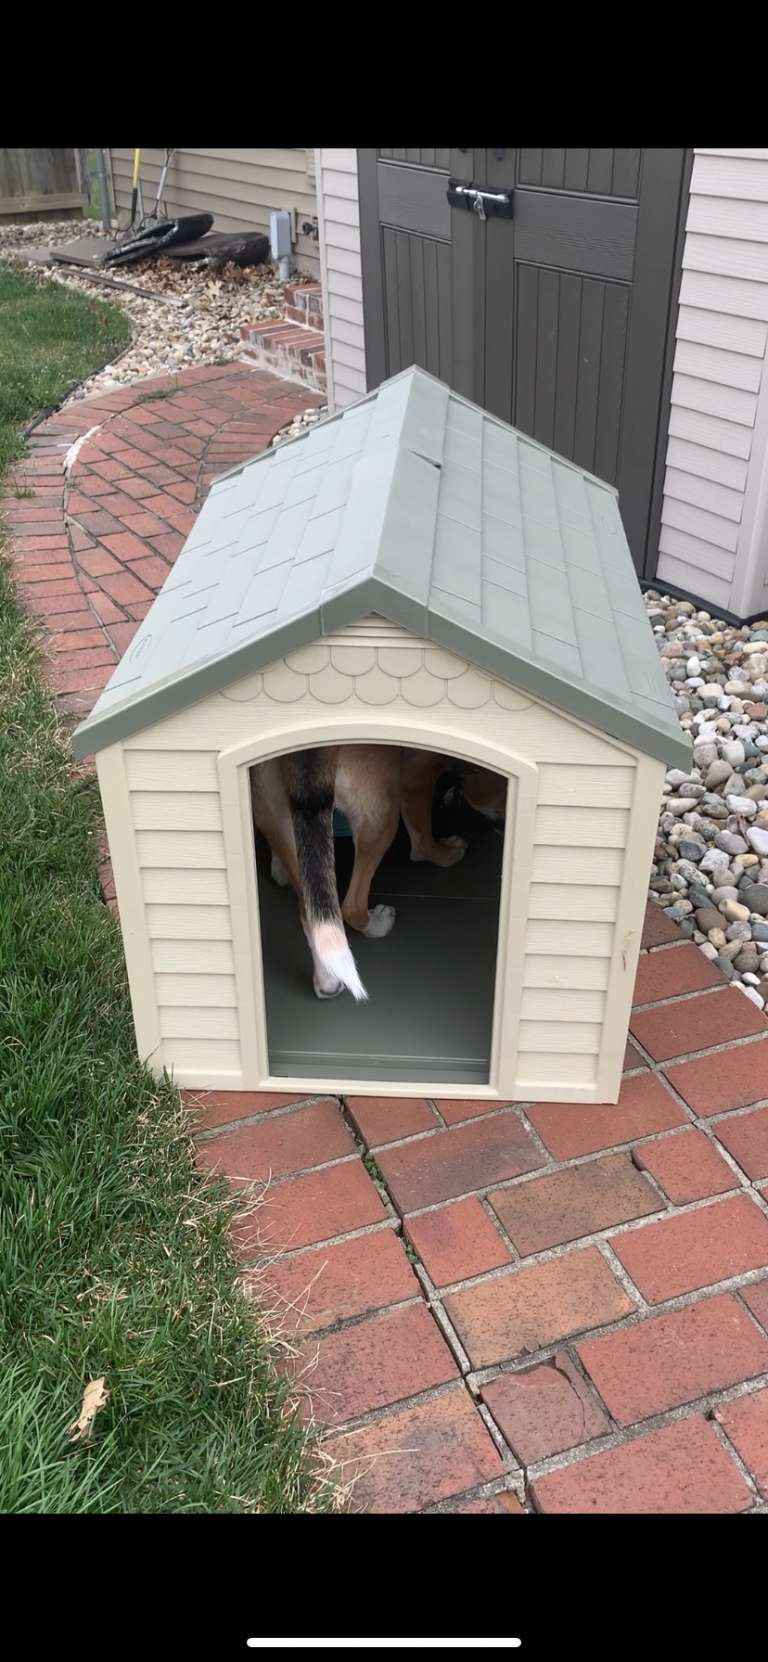 Sasha don’t really like her dog house